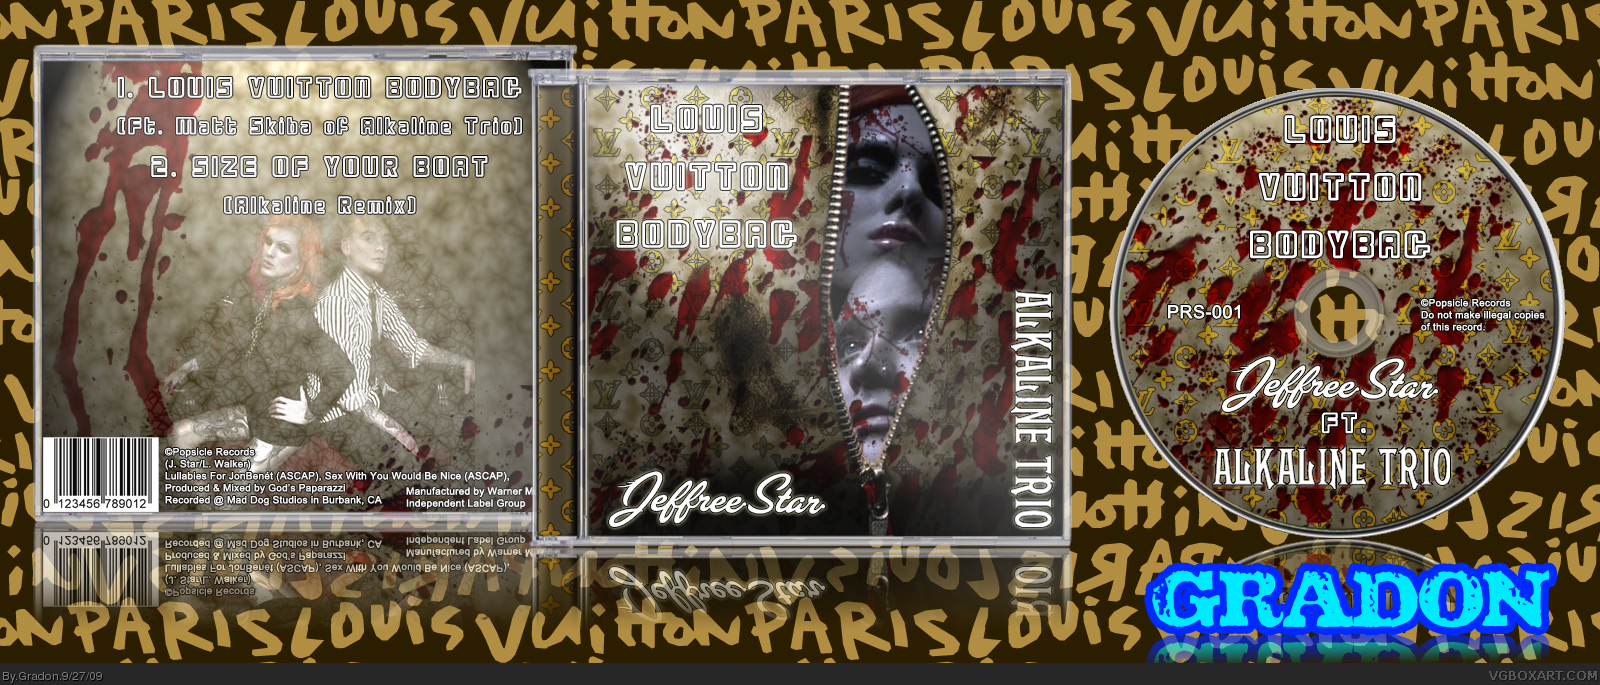 Jeffree Star: Louis Vuitton Body Bag (ft, ALK3) box cover